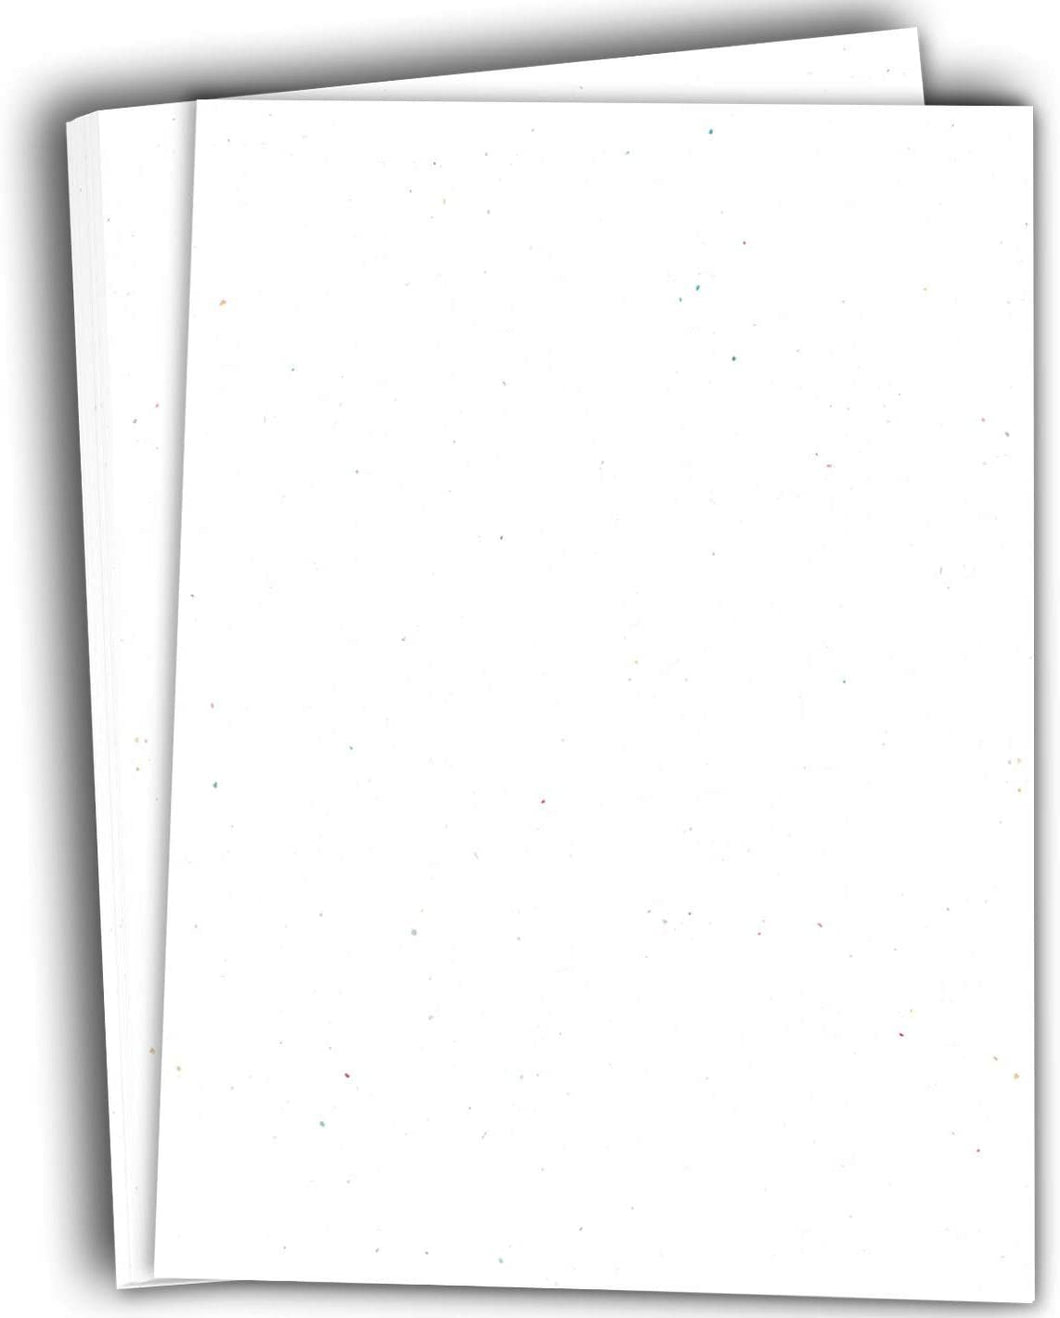 Hamilco Colored Cardstock Scrapbook Paper 8.5 x 11 Speckled White Mi –